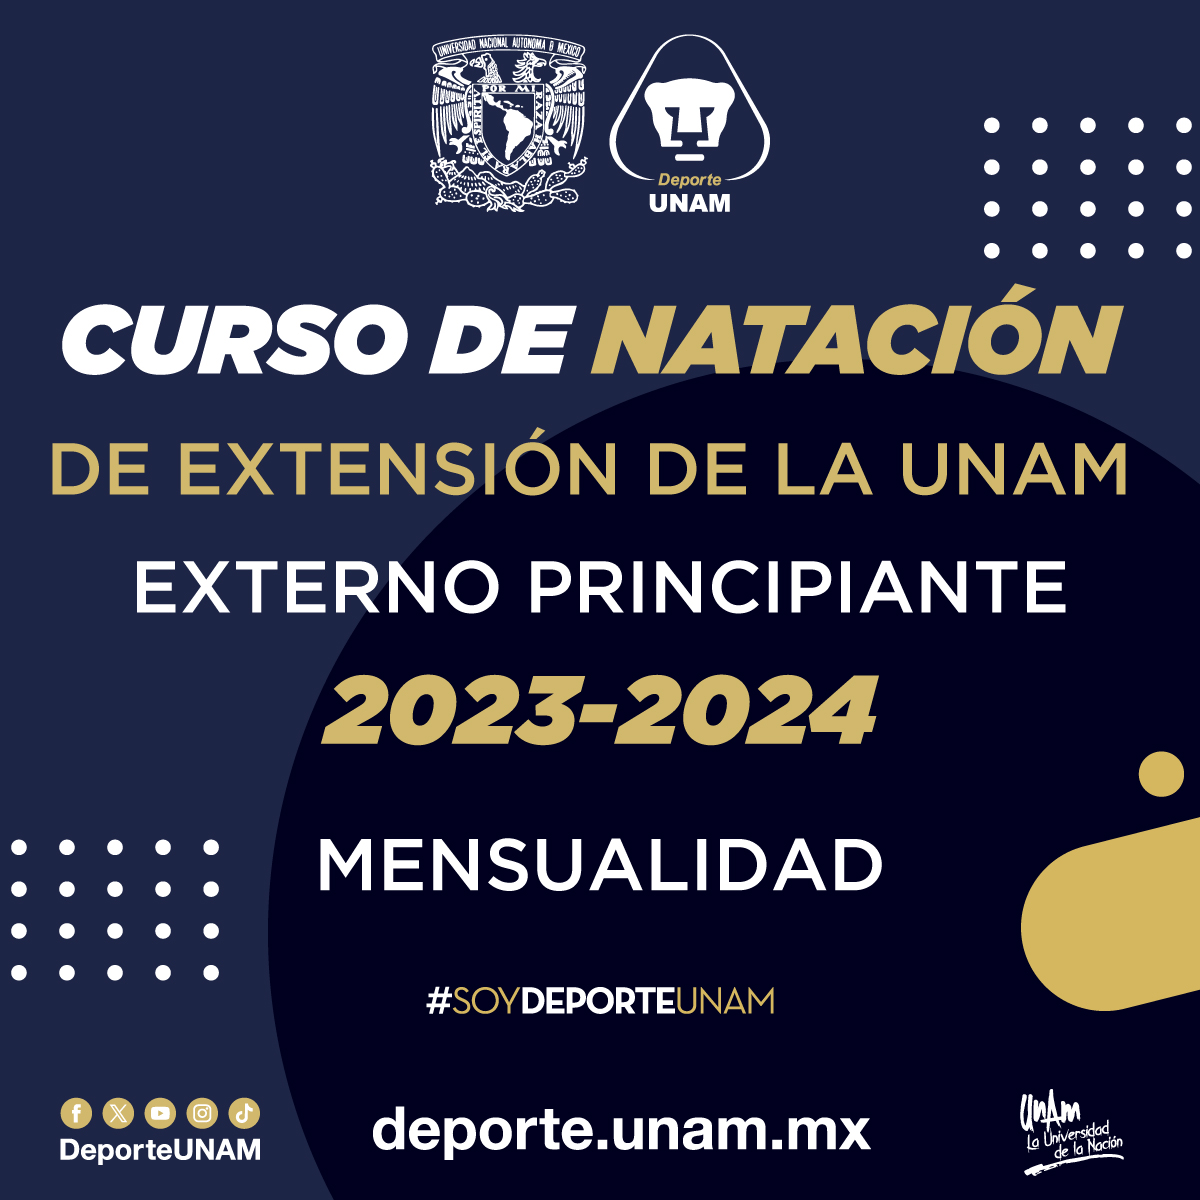 CURSO DE NATACIÓN DE EXTENSIÓN DE LA UNAM 2023 - 2024 EXTERNO PRINCIPIANTE MENSUALIDAD